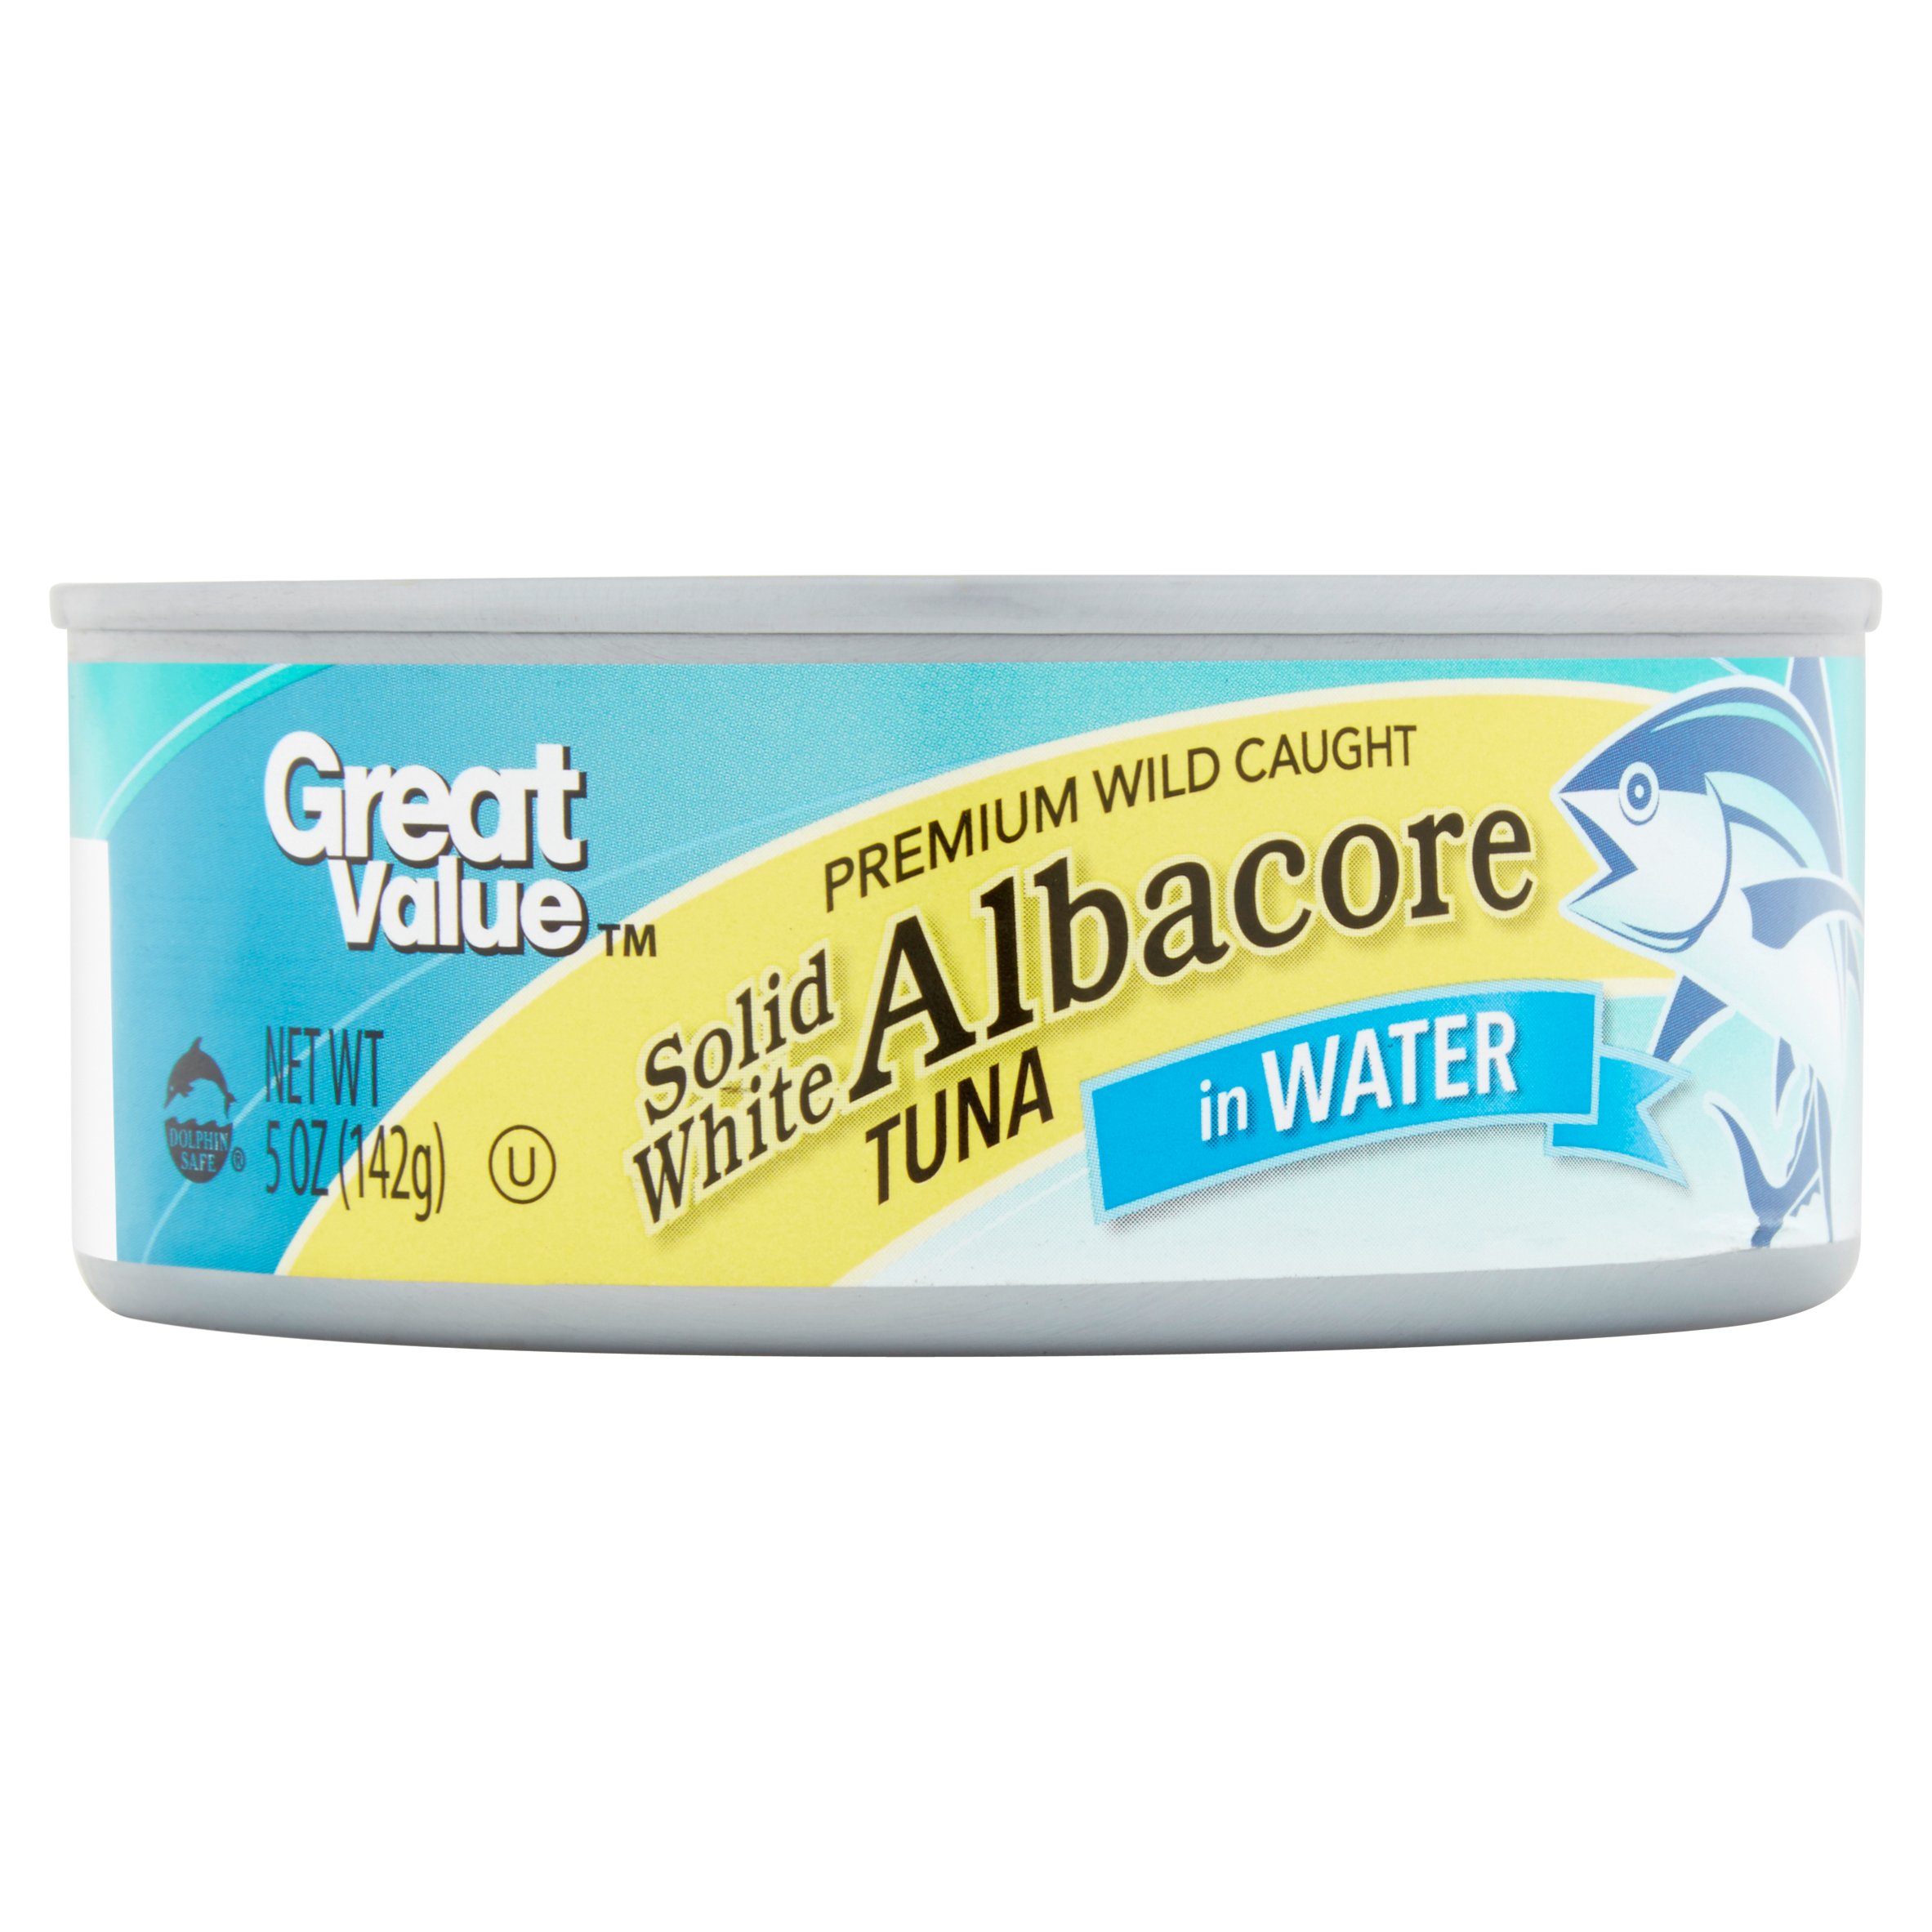 Great Value Premium Wild Caught Solid White Albacore Tuna in Water 5 oz